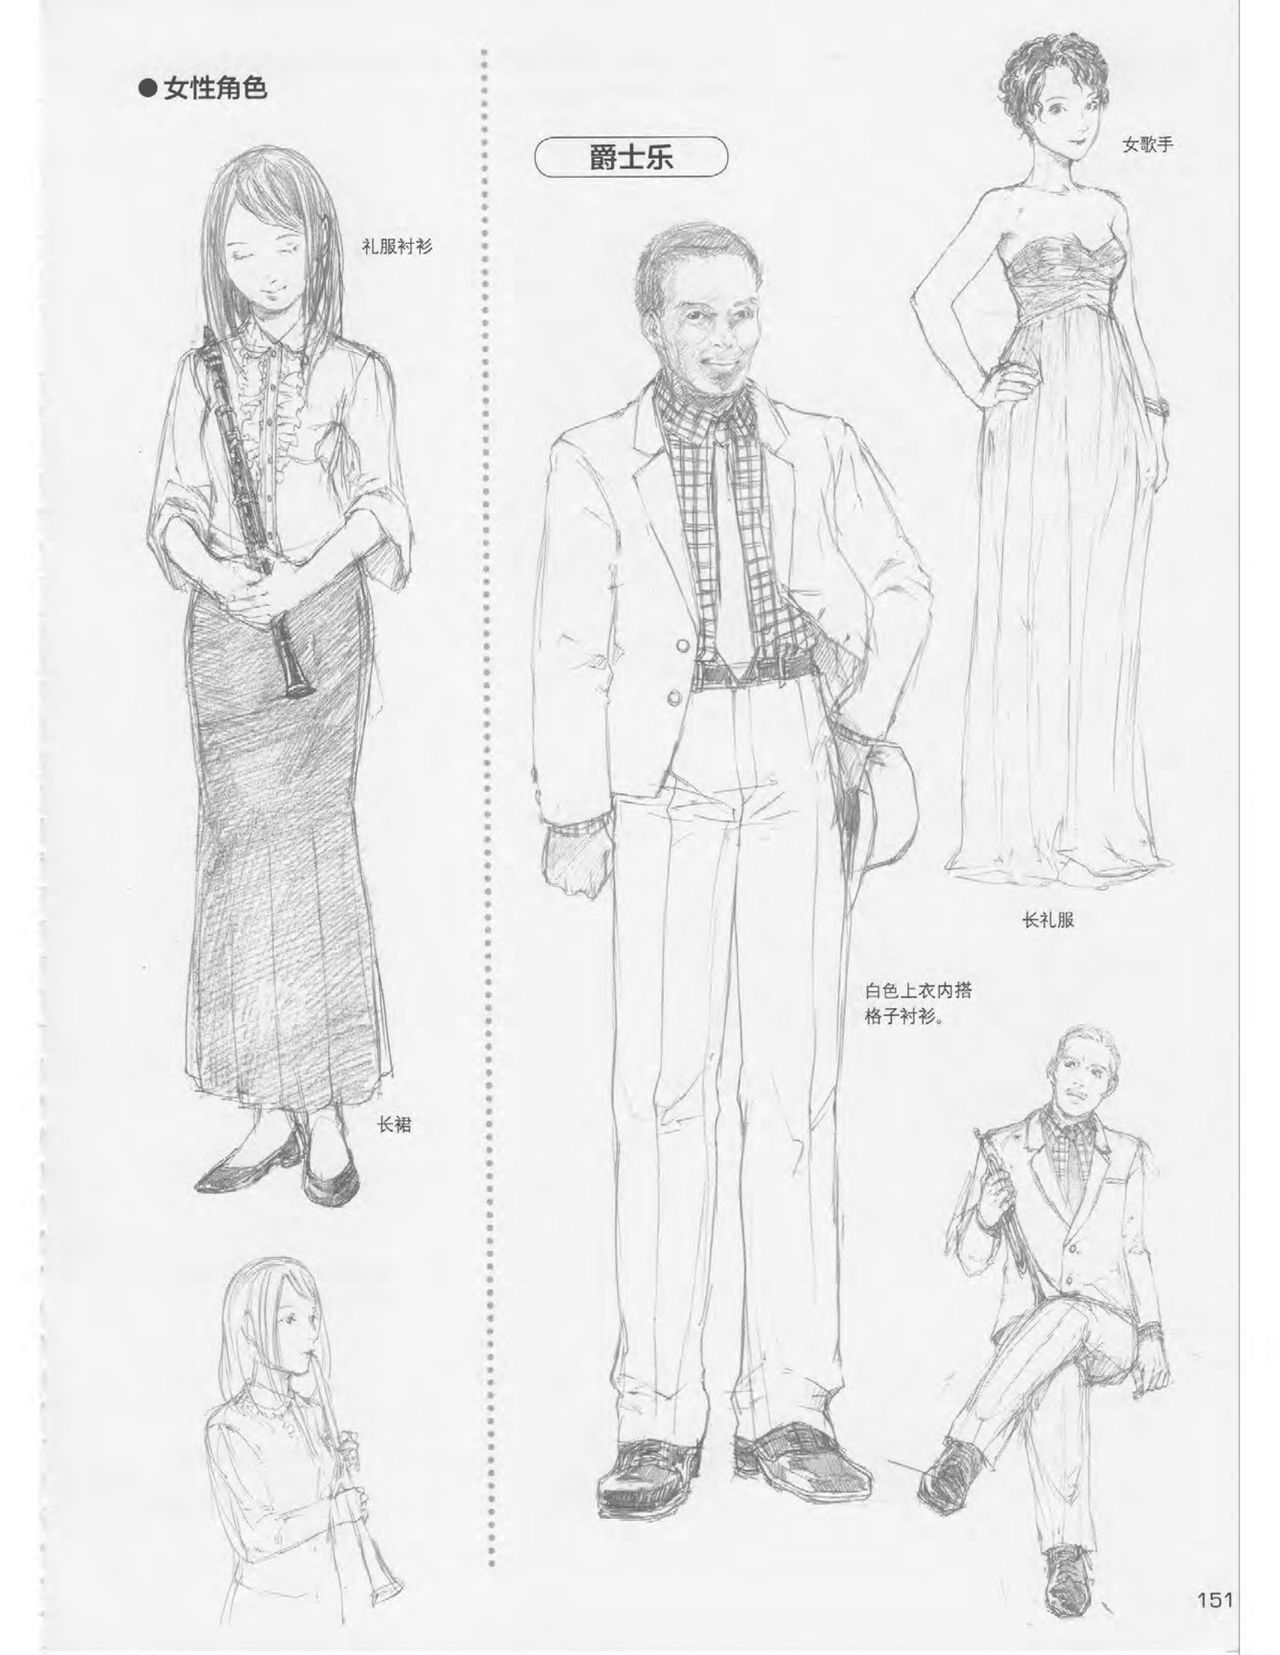 Japanese Manga Master Lecture 3: Lin Akira and Kakumaru Maru Talk About Glamorous Character Modeling 150